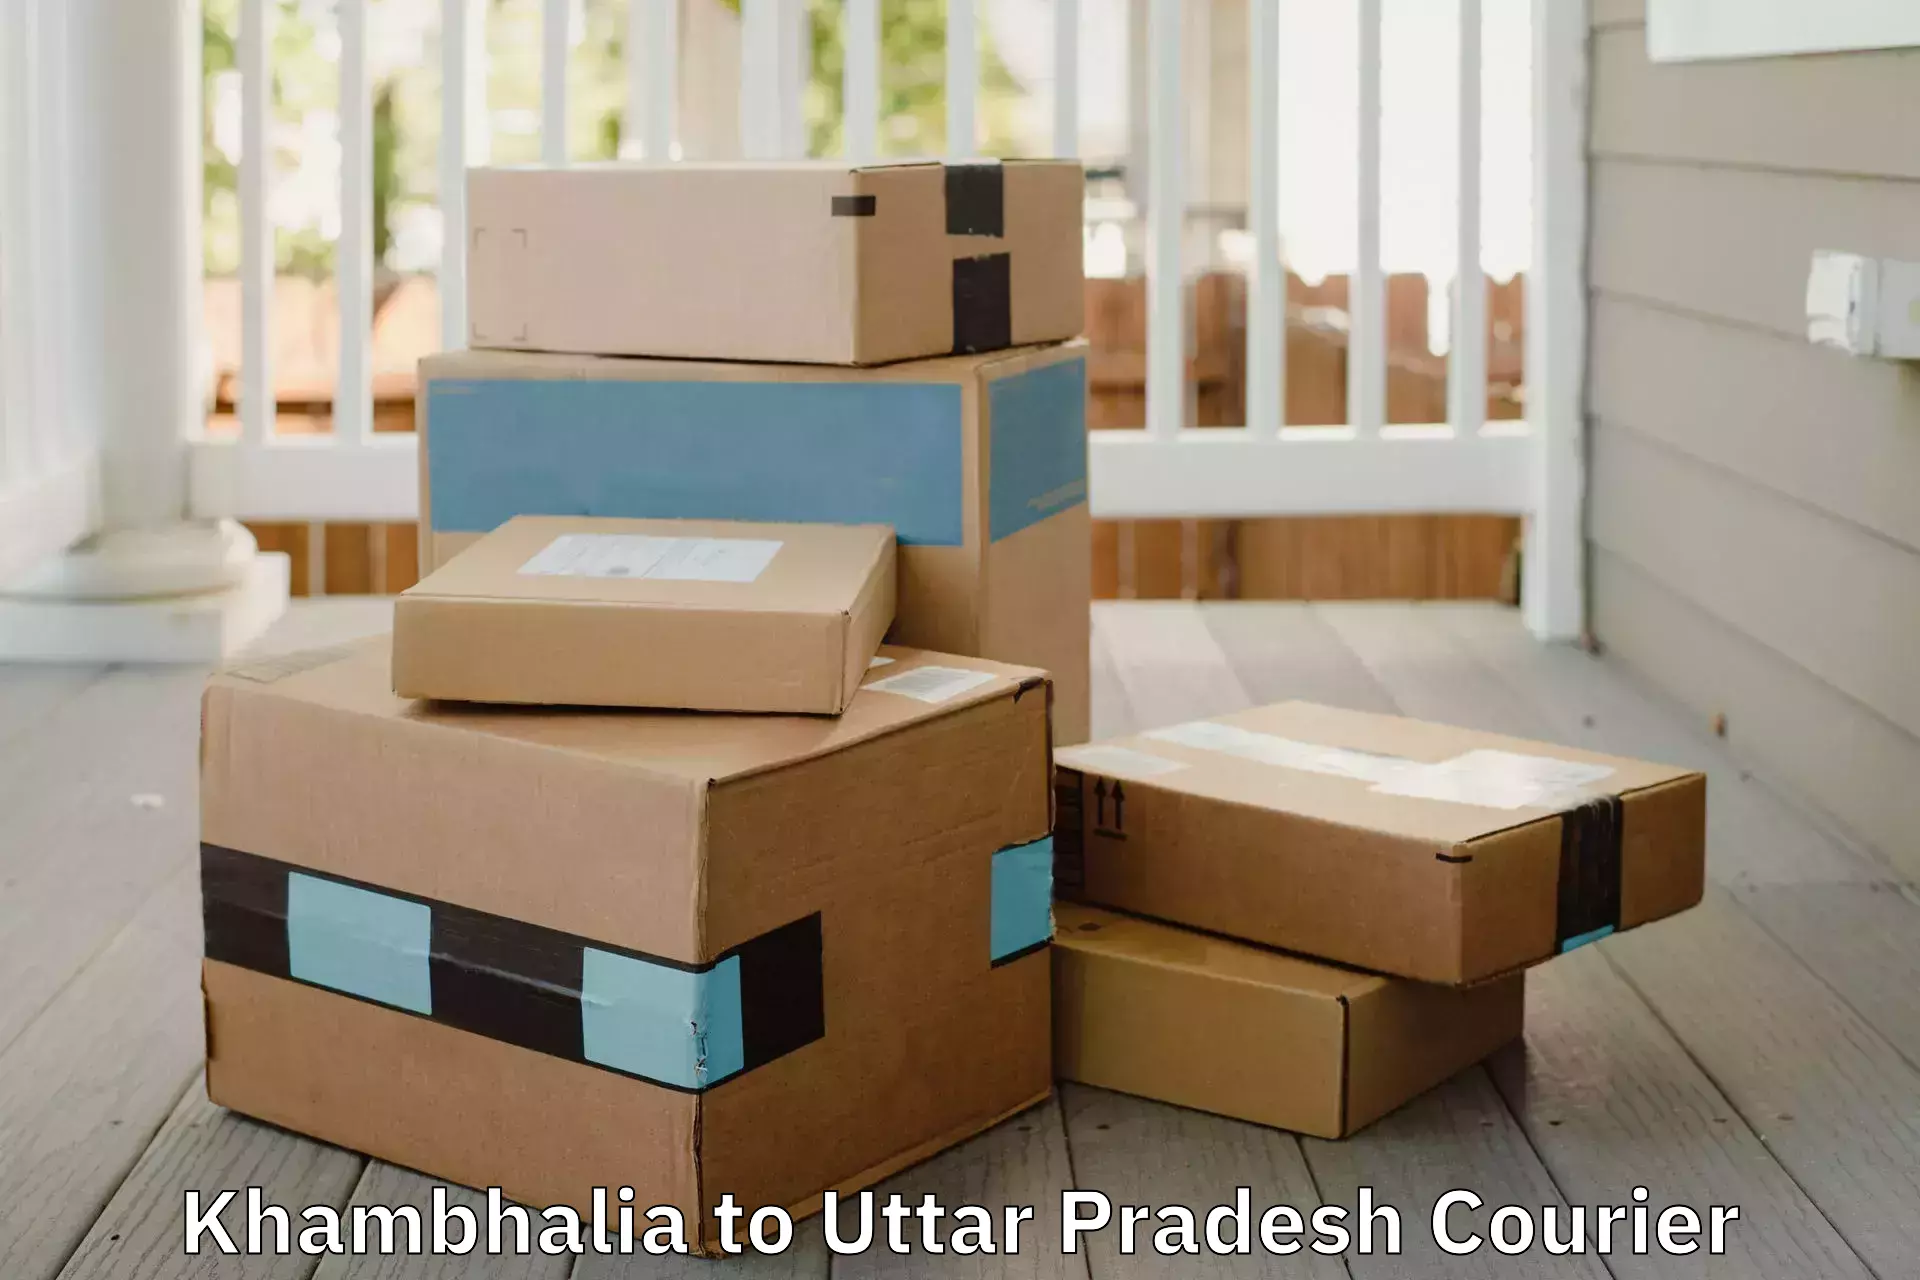 Cost-effective moving options in Khambhalia to Pachperwa